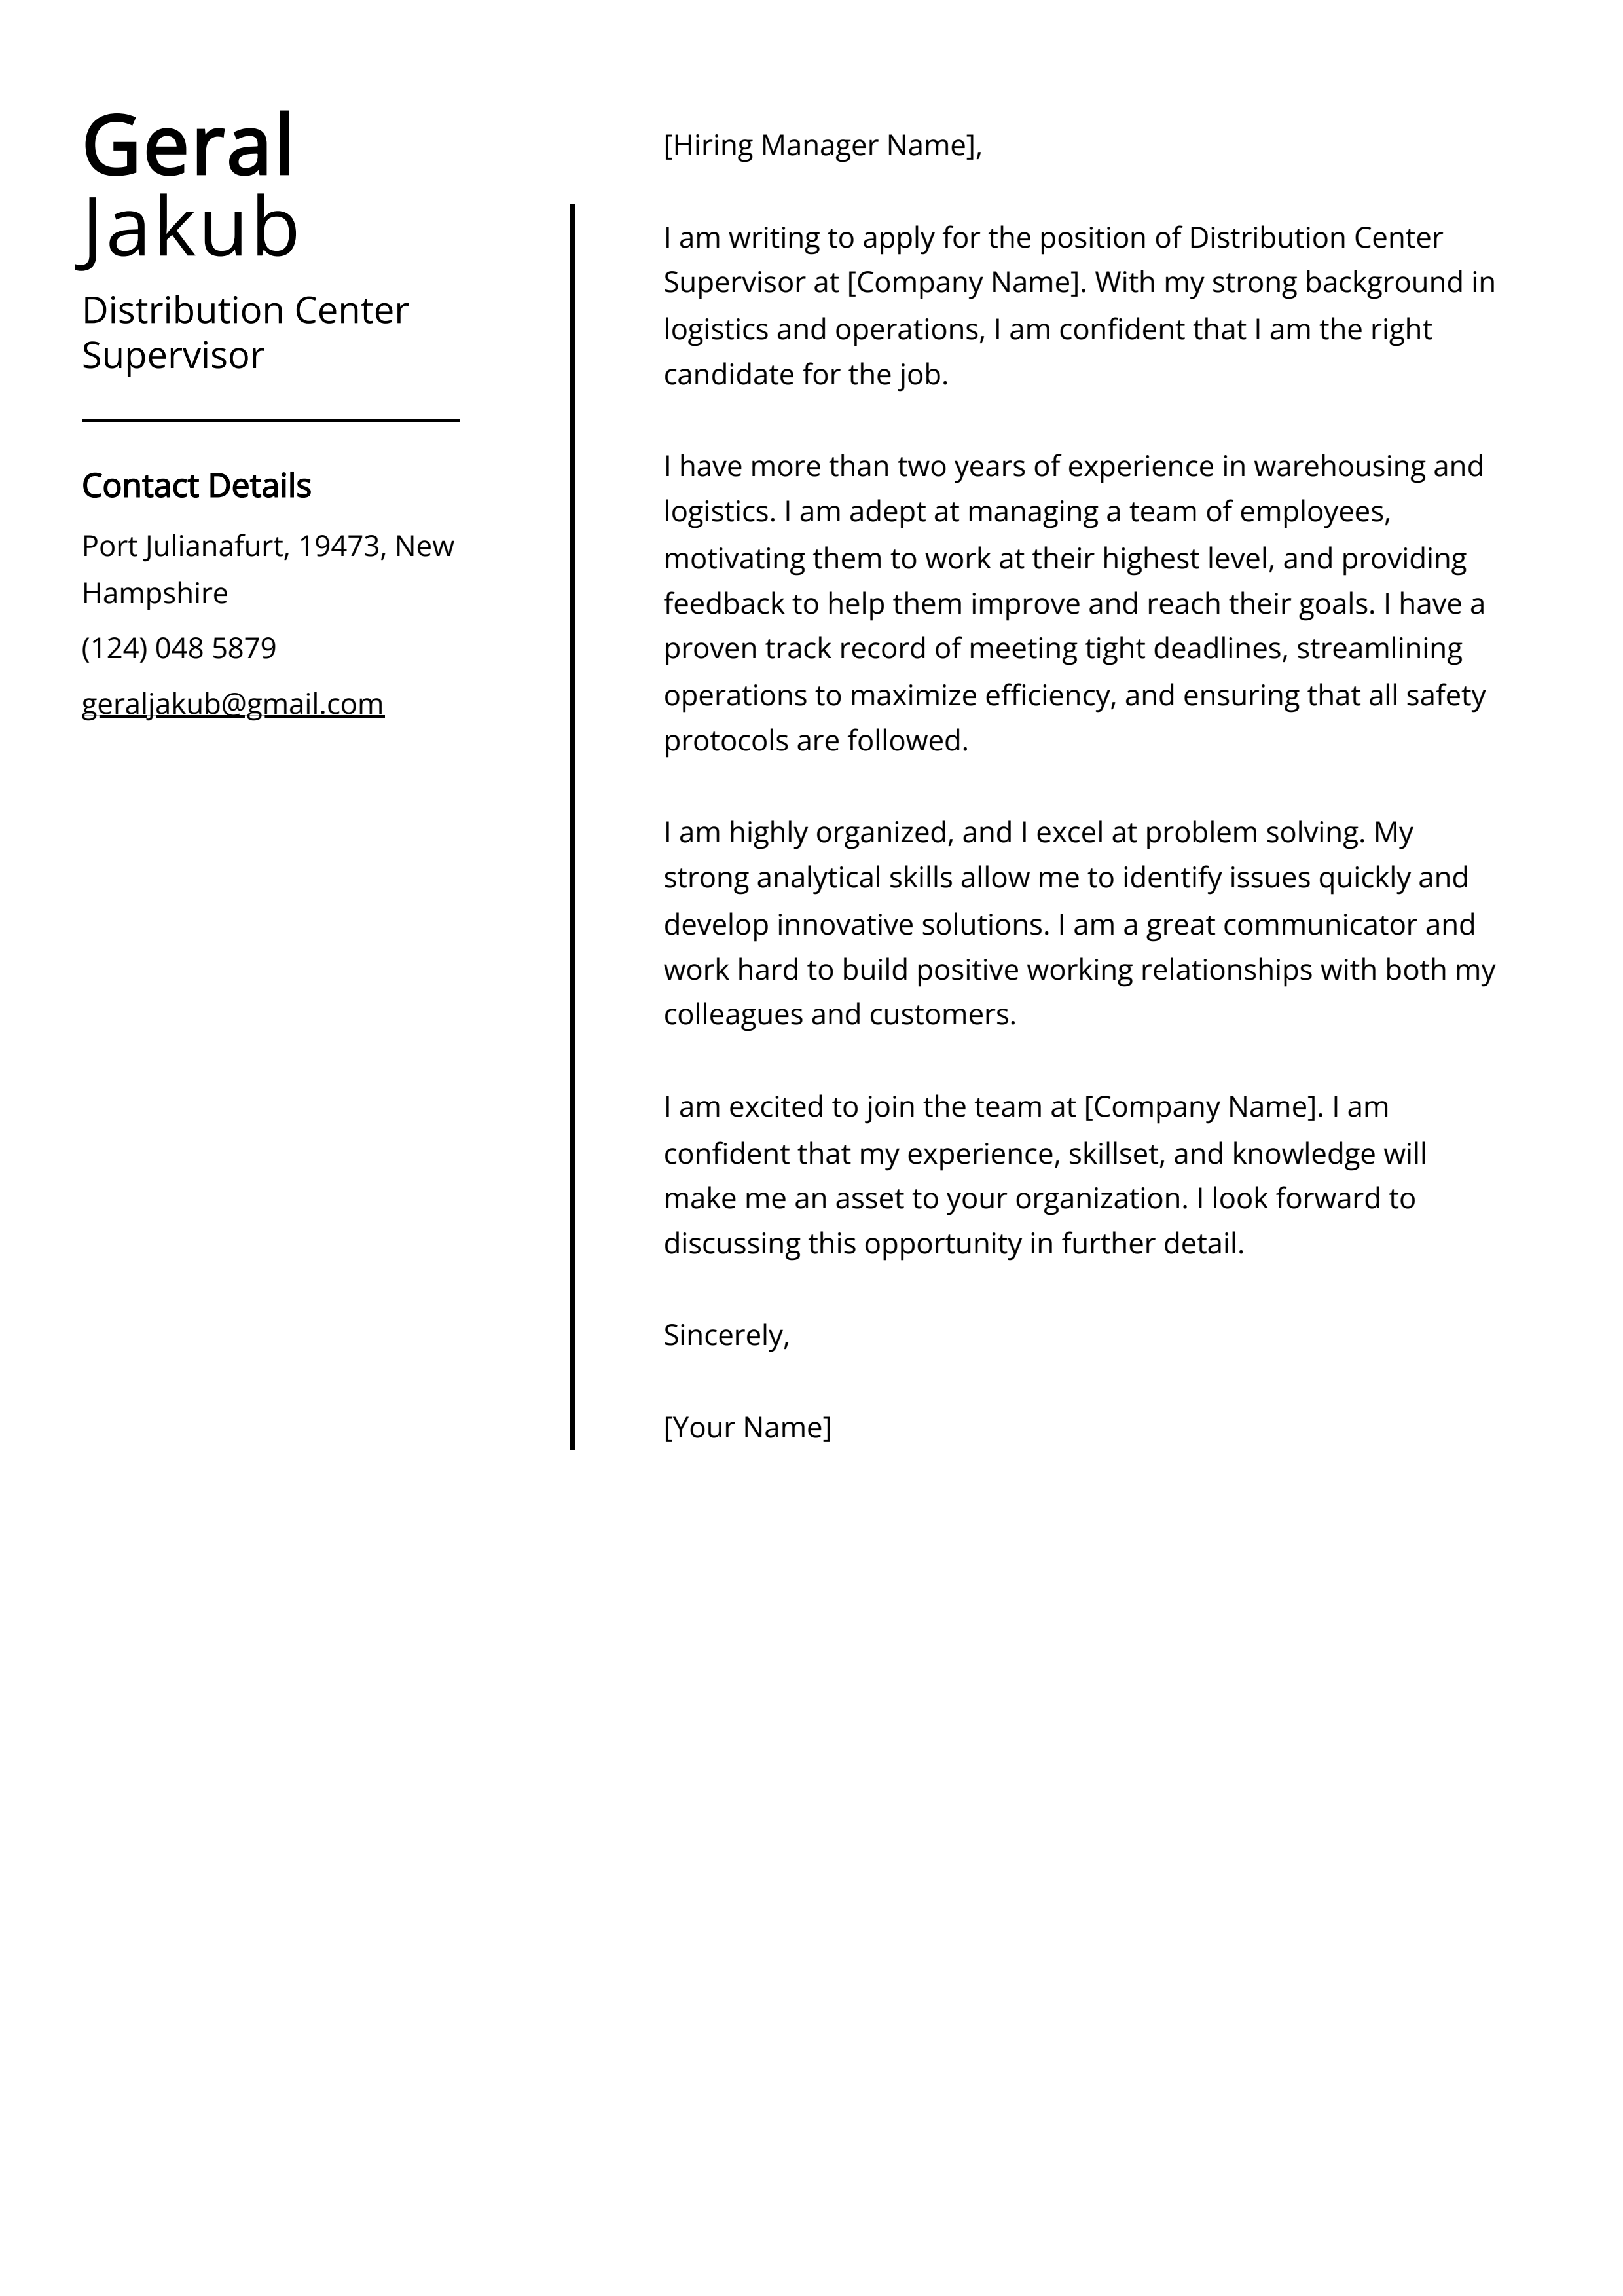 Distribution Center Supervisor Cover Letter Example